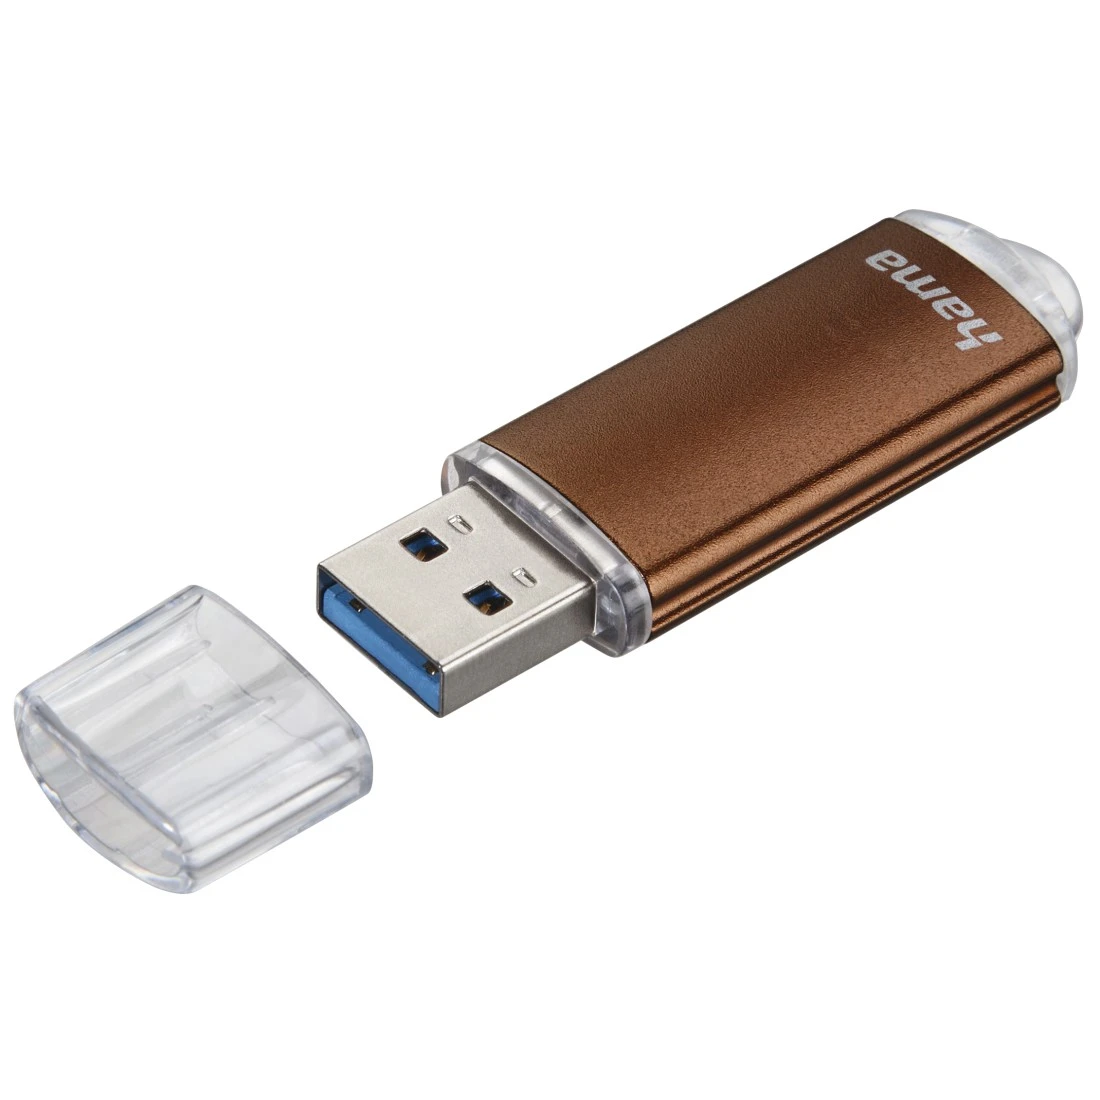 Clé USB Laeta, USB 3.0, 128 Go, 90Mo/s, bronze